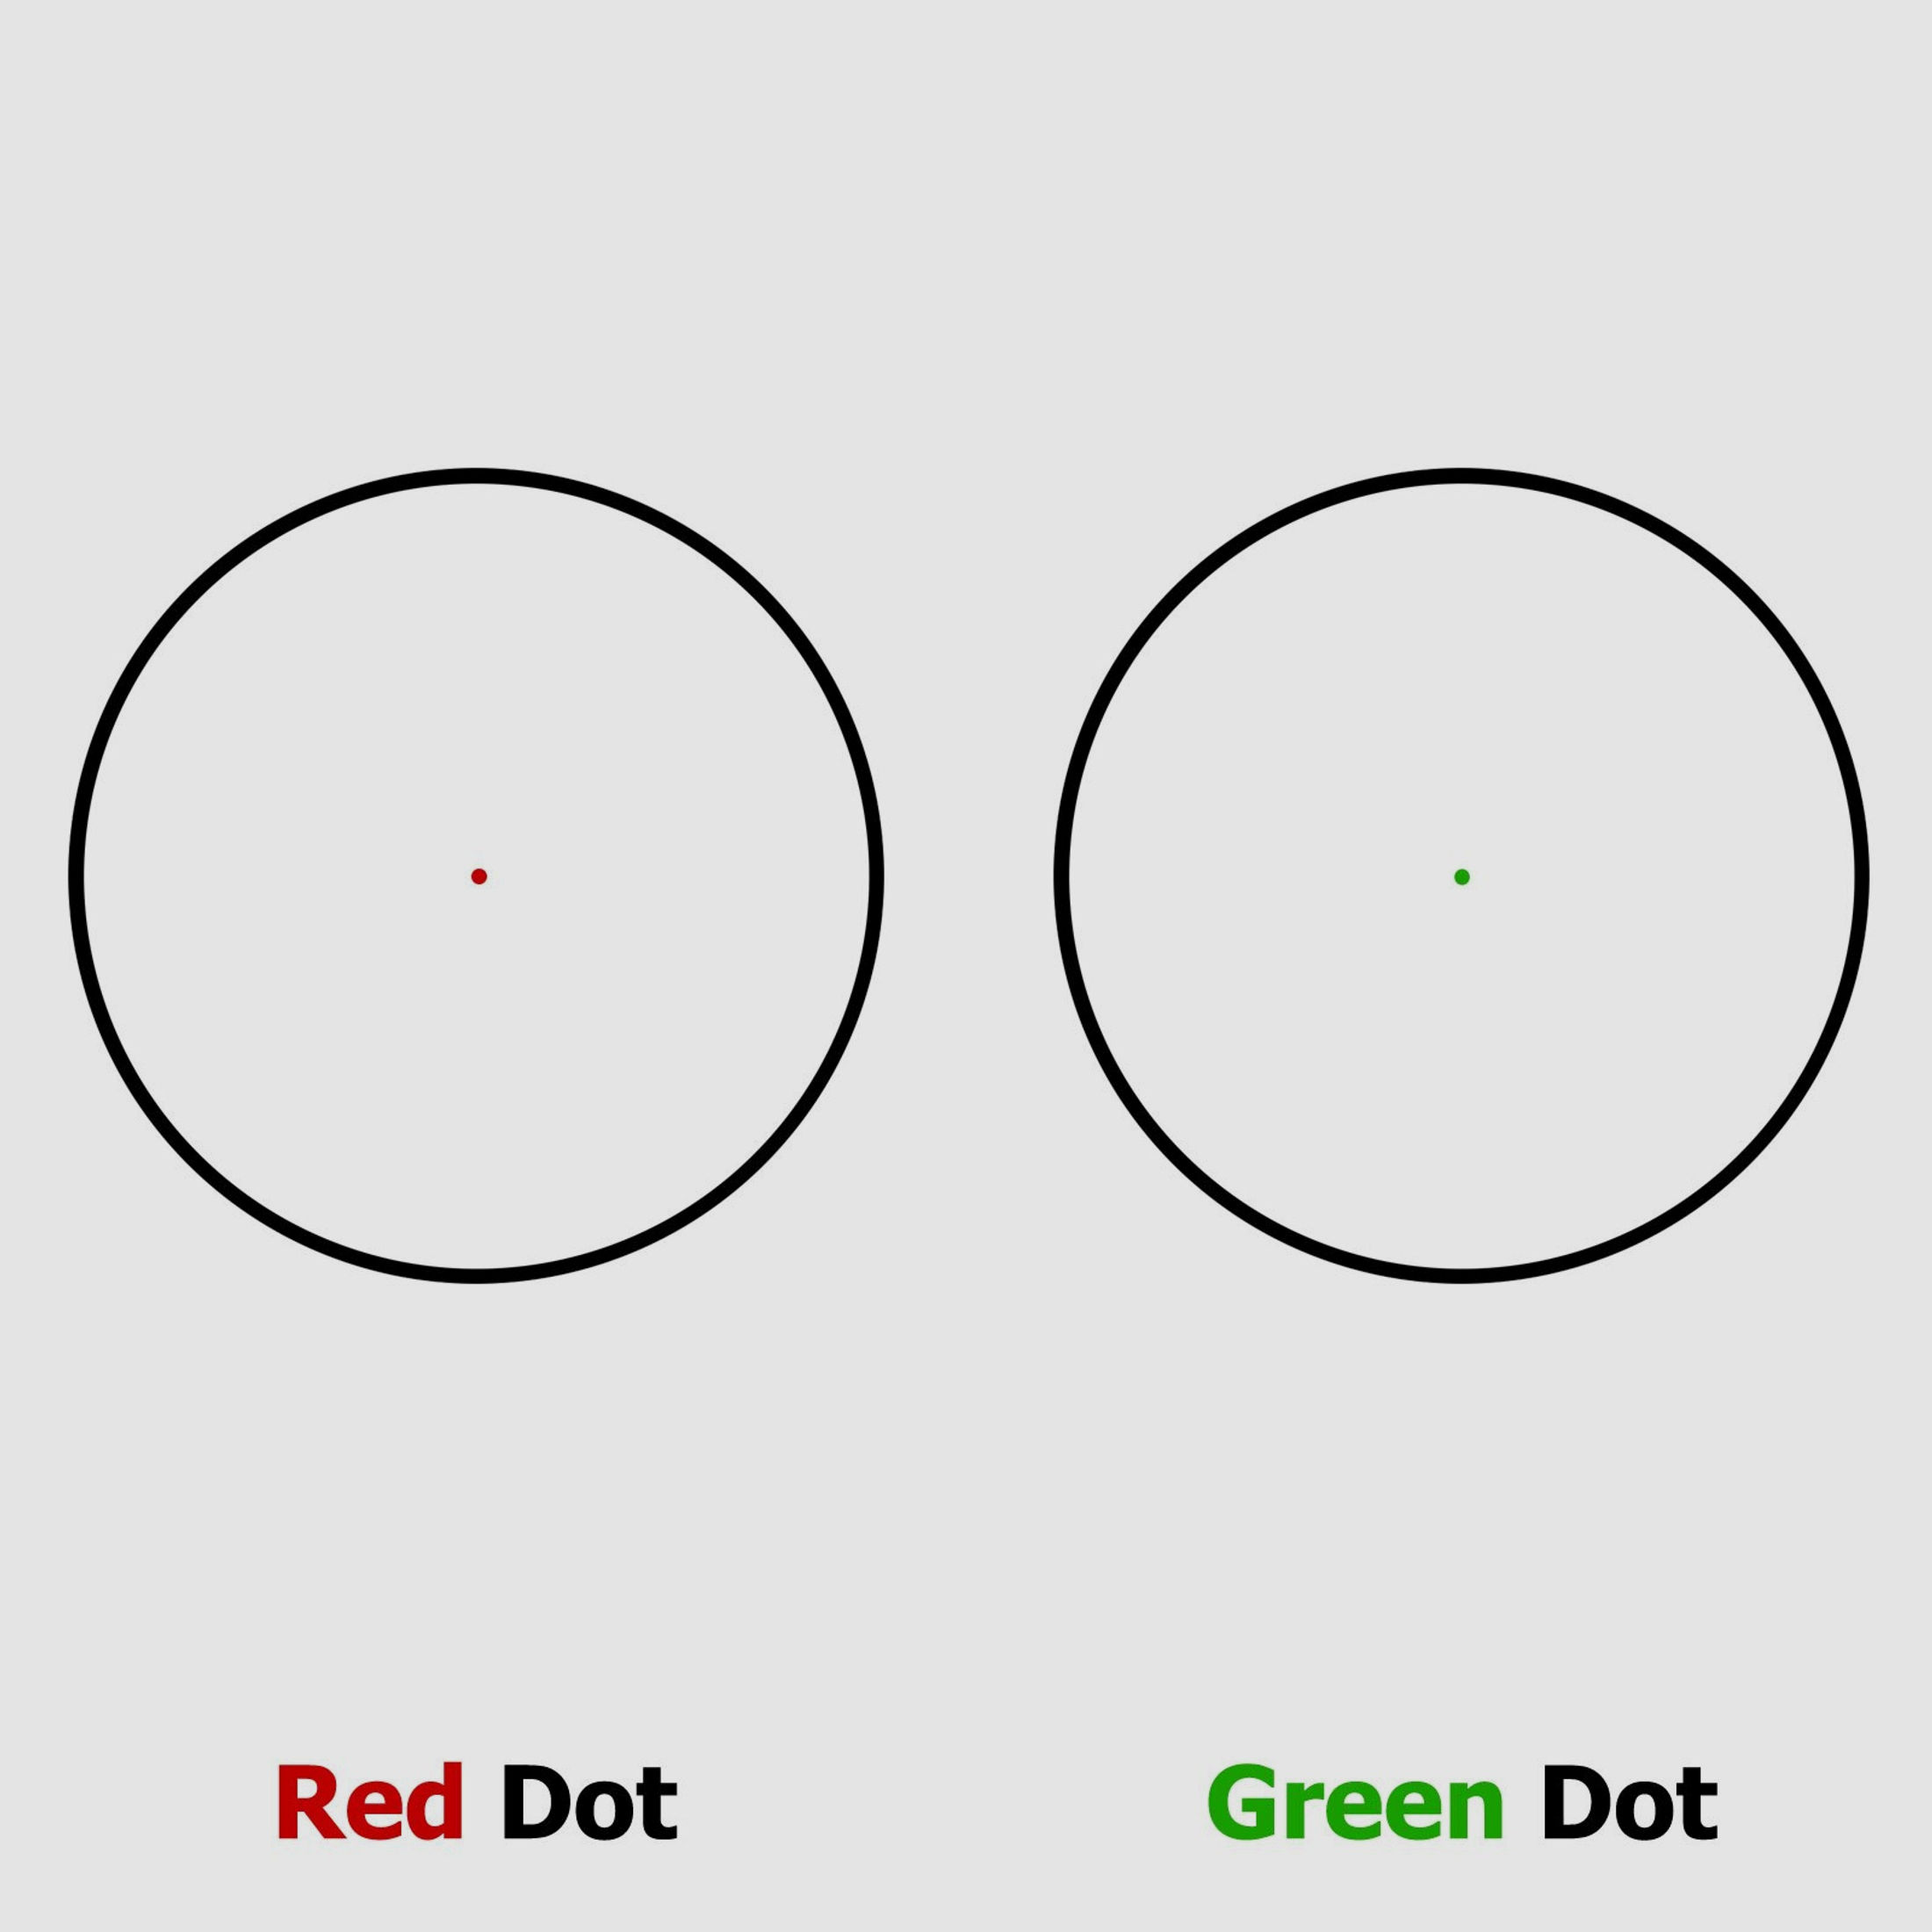 TFI RD11 Red Dot 1 x 30 Leuchtpunktvisier mit Weavermontage